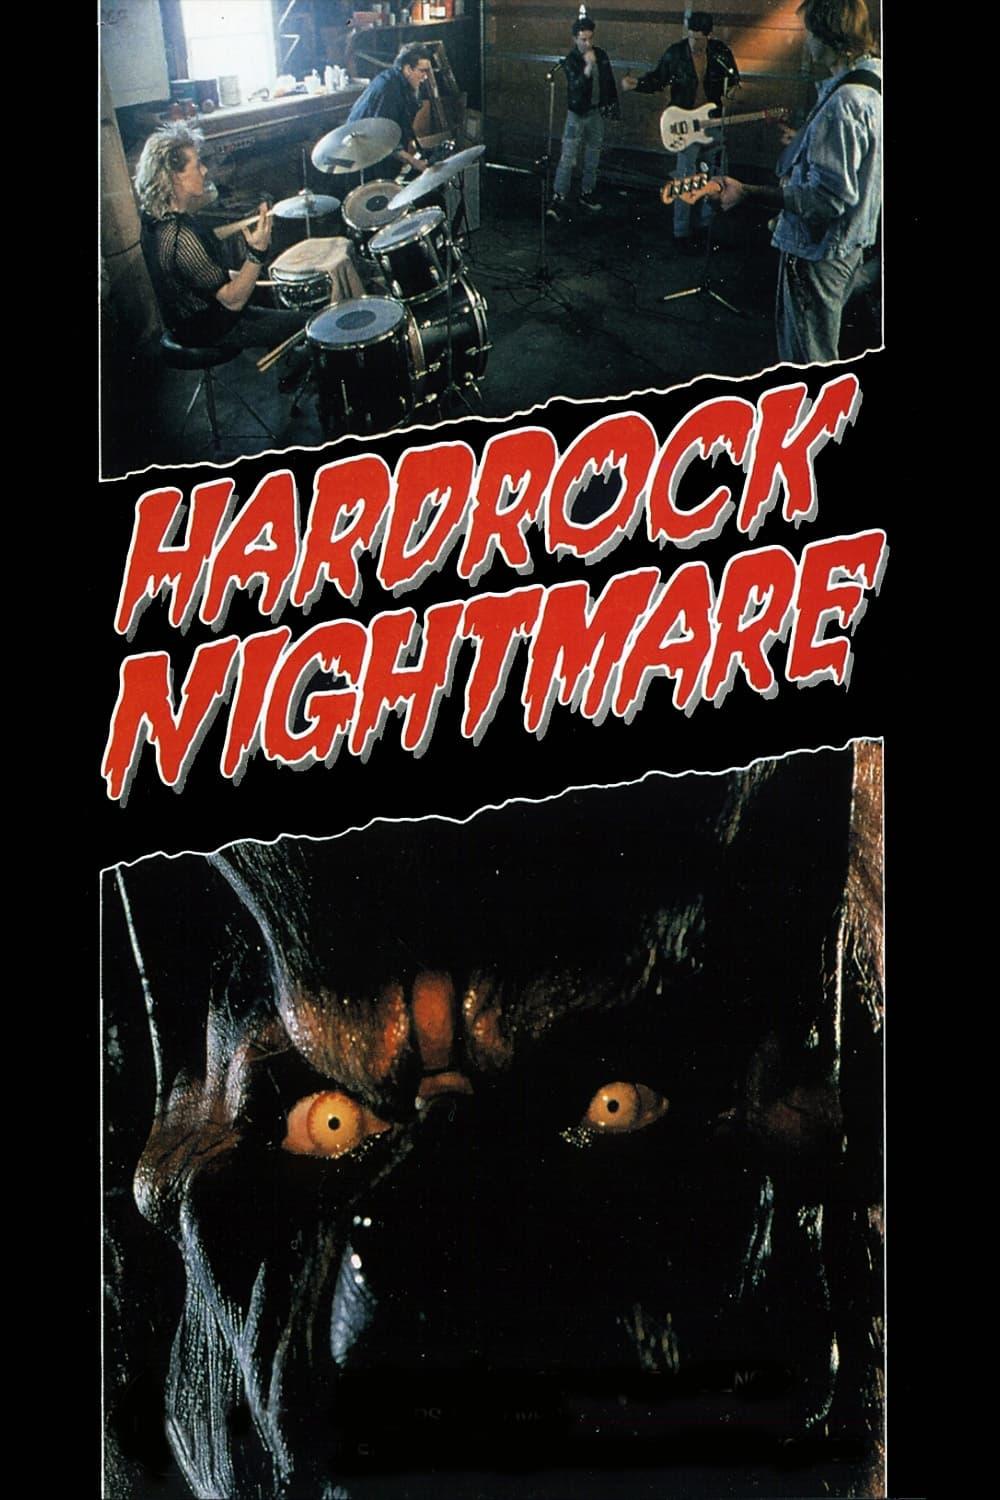 Hard Rock Nightmare poster